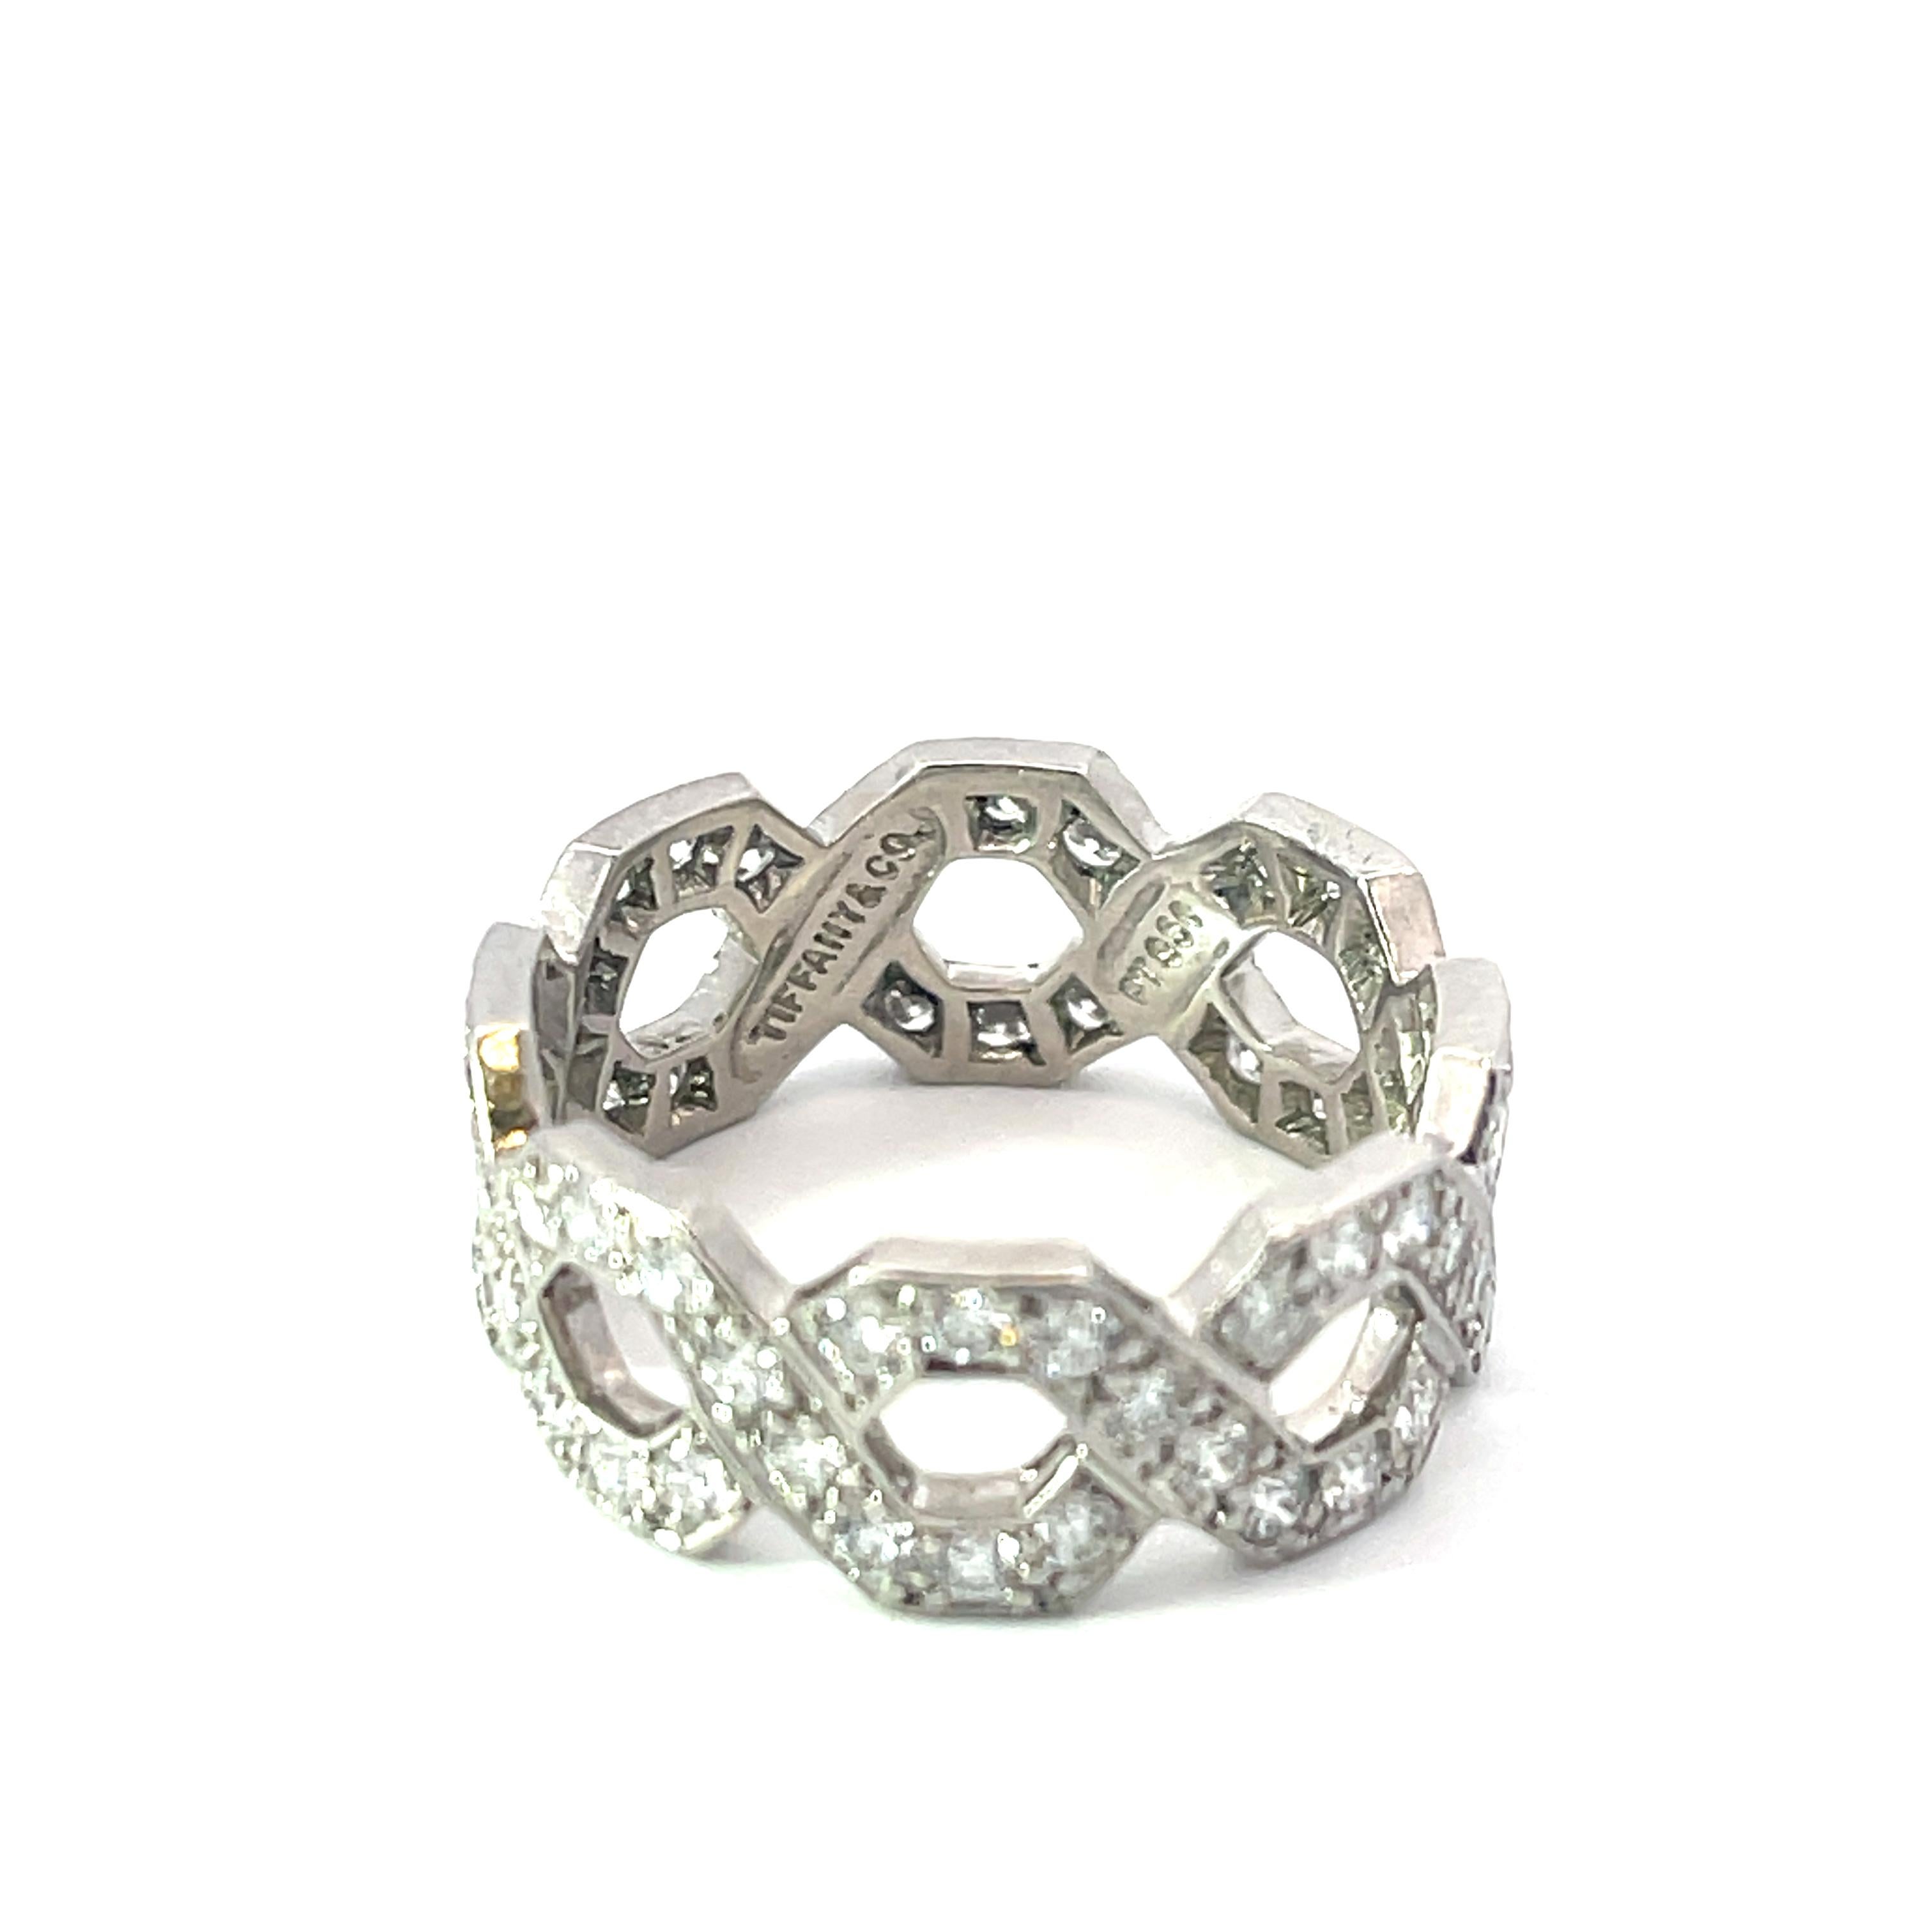 Tiffany & Co. Sechseckiger Diamantring aus Platin. Der Ring ist mit 2.70 ct runden Diamanten im Brillantschliff besetzt. Der Ring ist Größe 7, 8 mm breit und wiegt 6,4 Gramm.